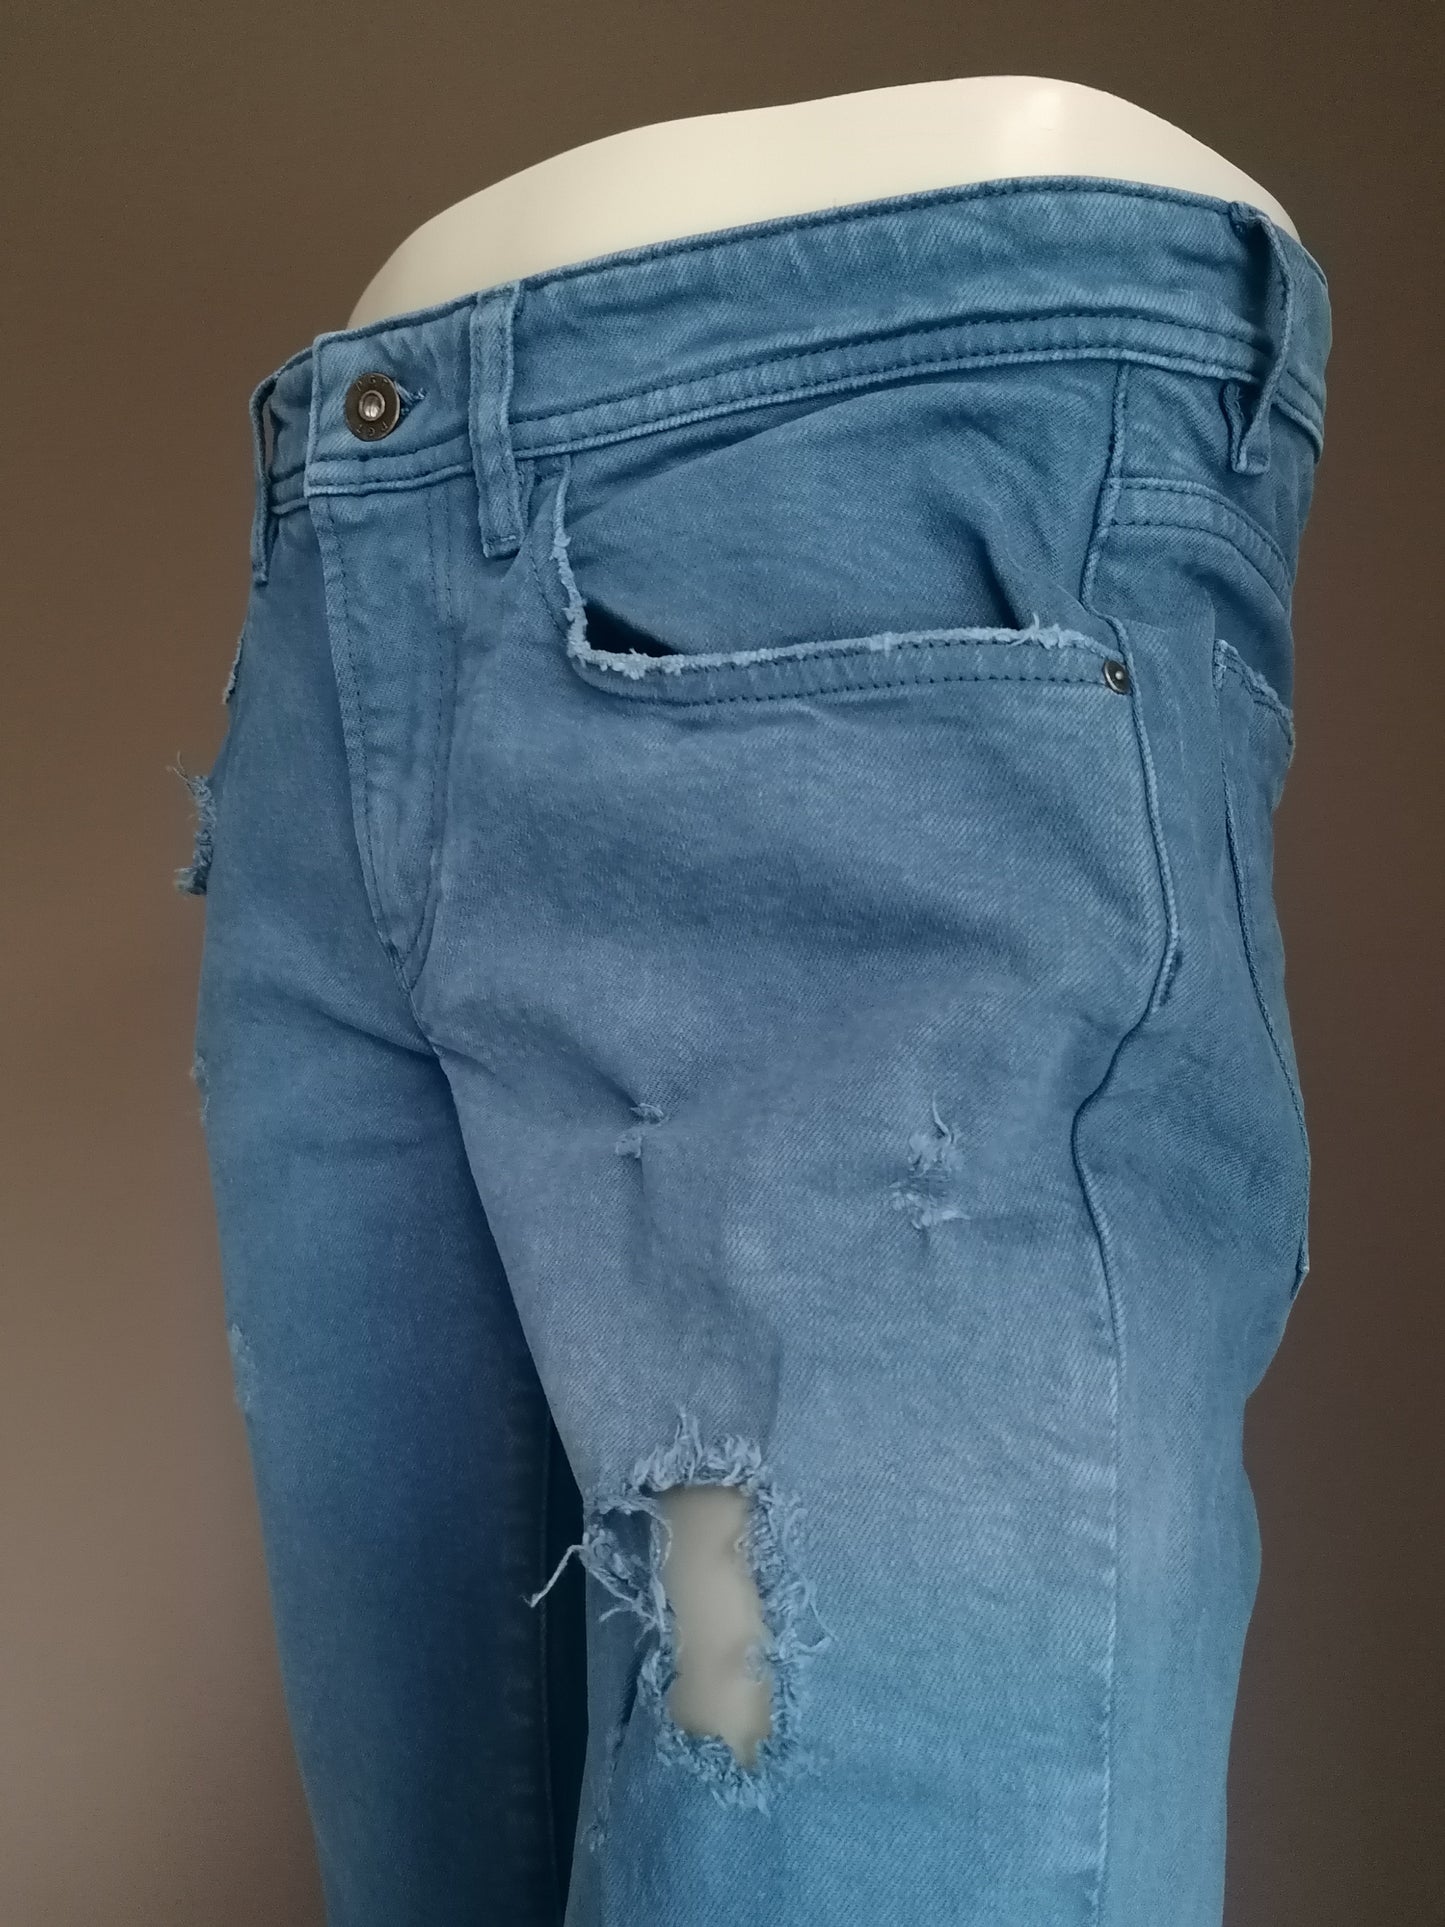 Jeans strappato PGT. Colorato blu. Taglia W32 - L32.